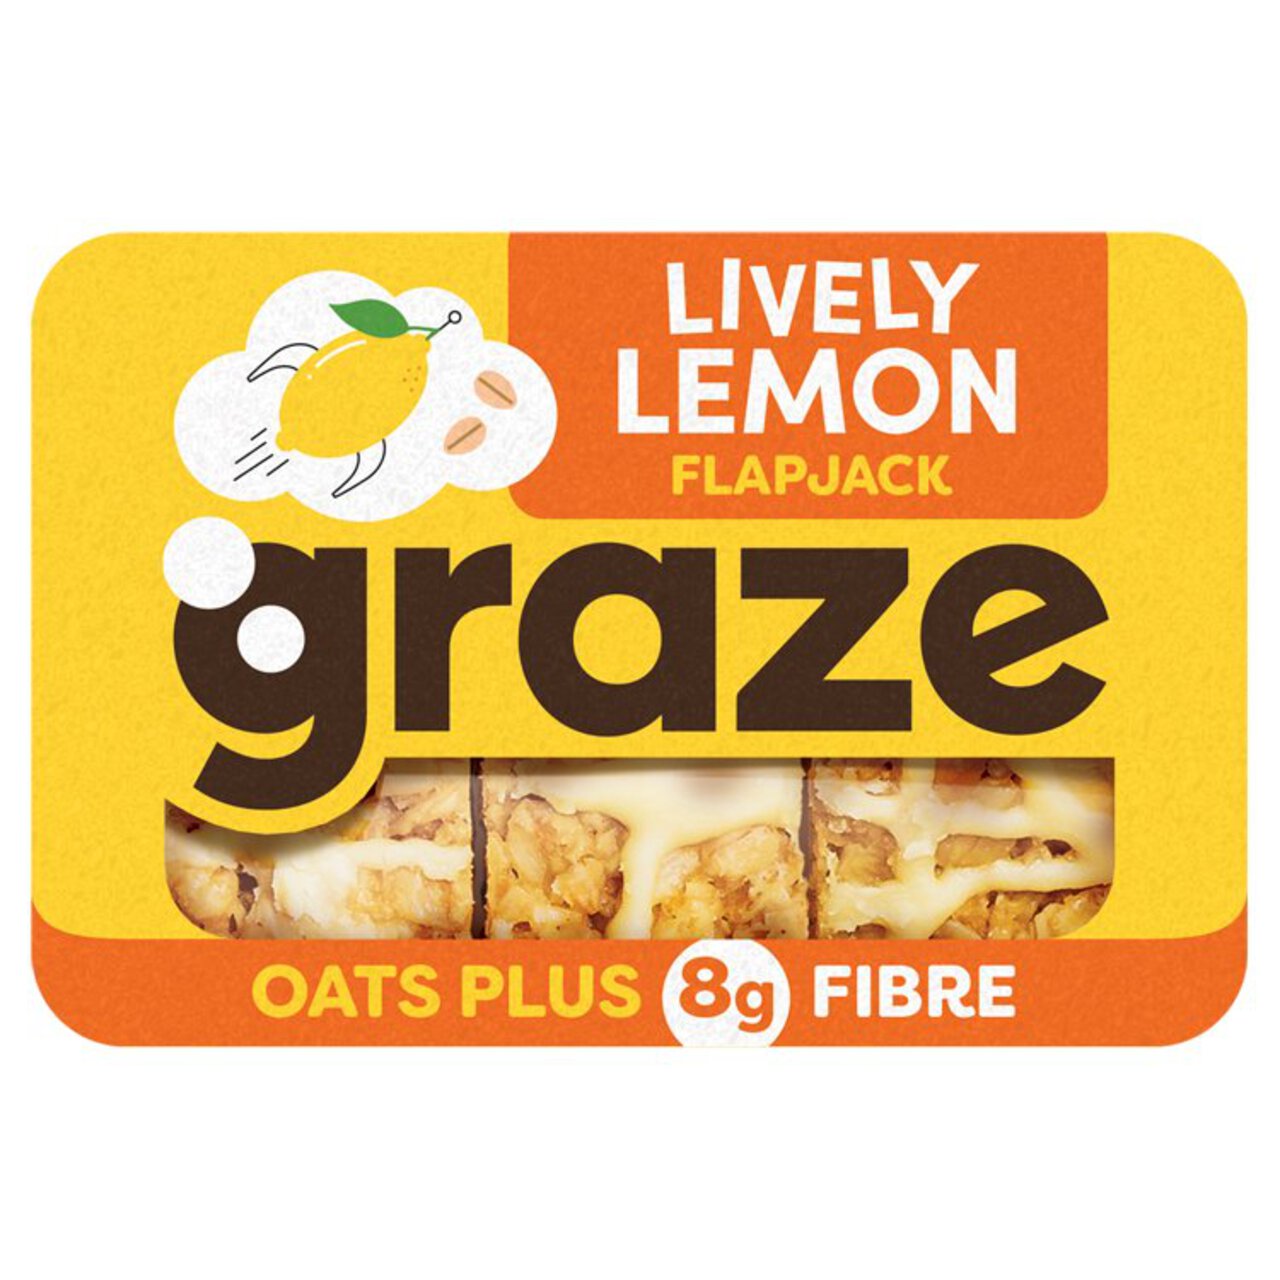 Graze Lively Lemon Flapjack 53g